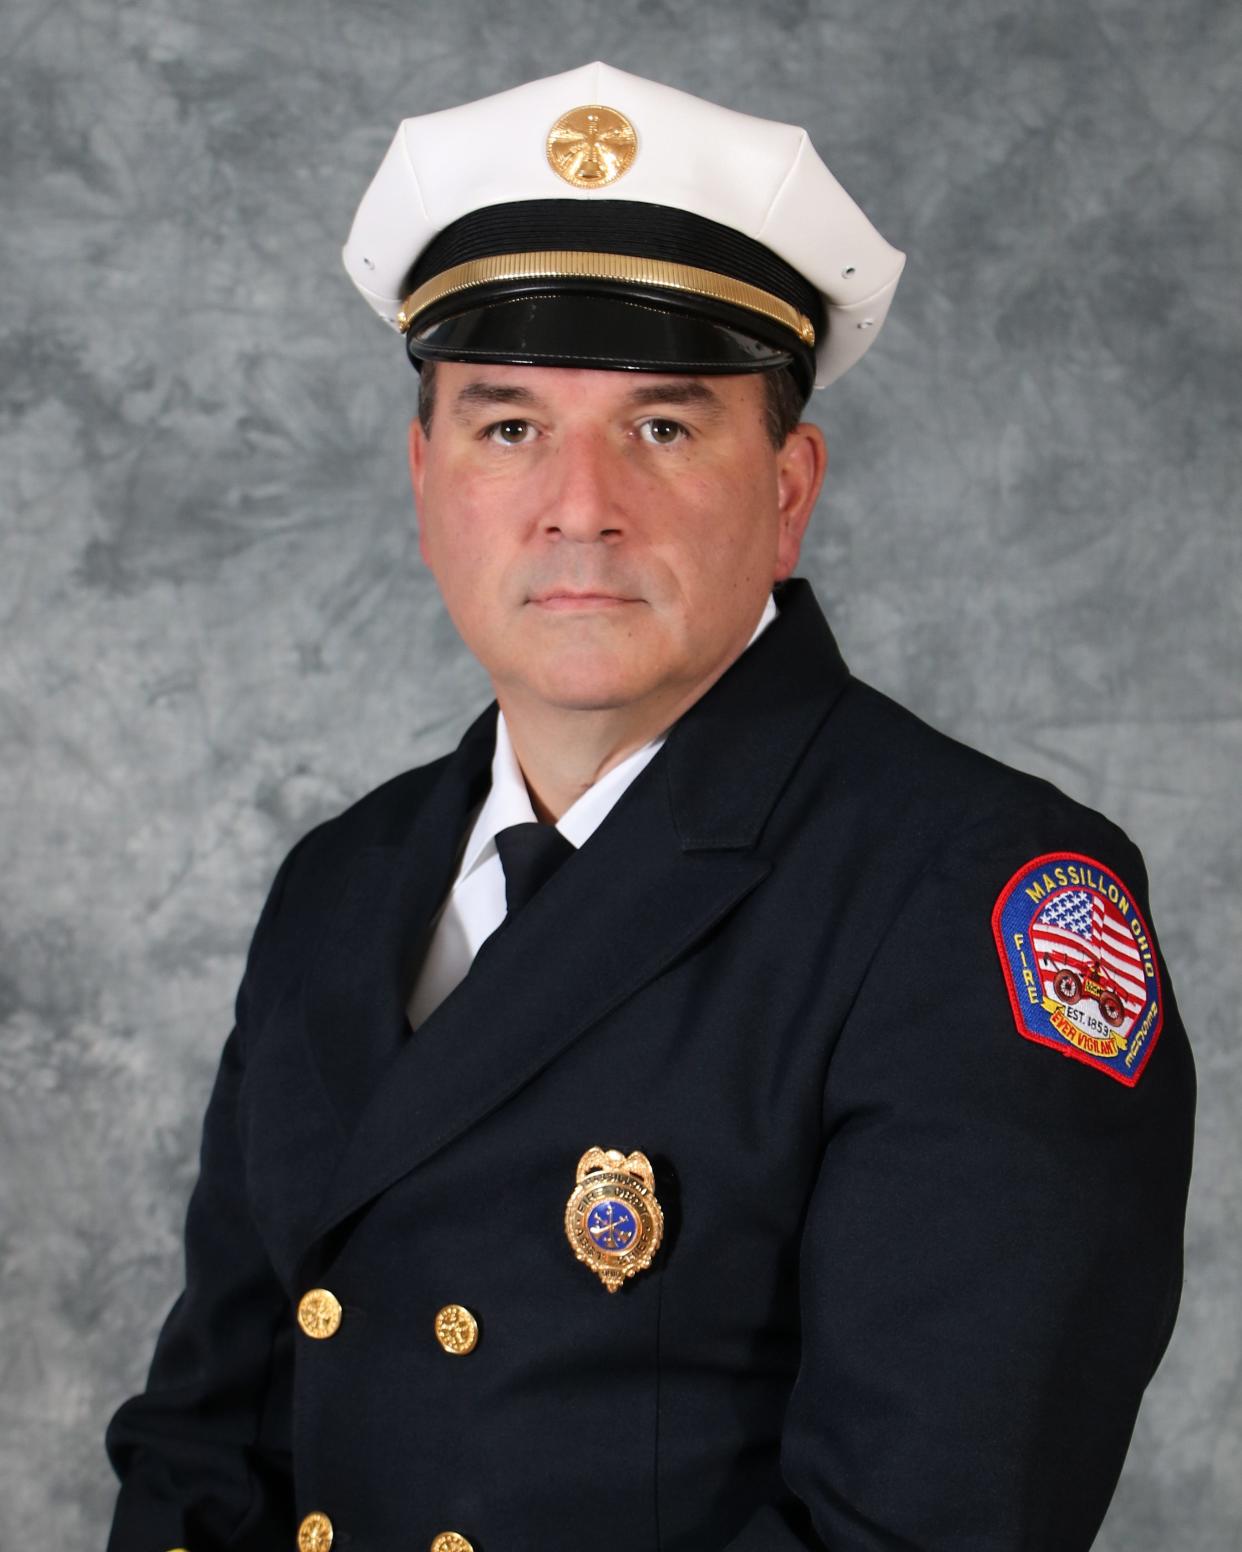 Fire Chief Matt Heck